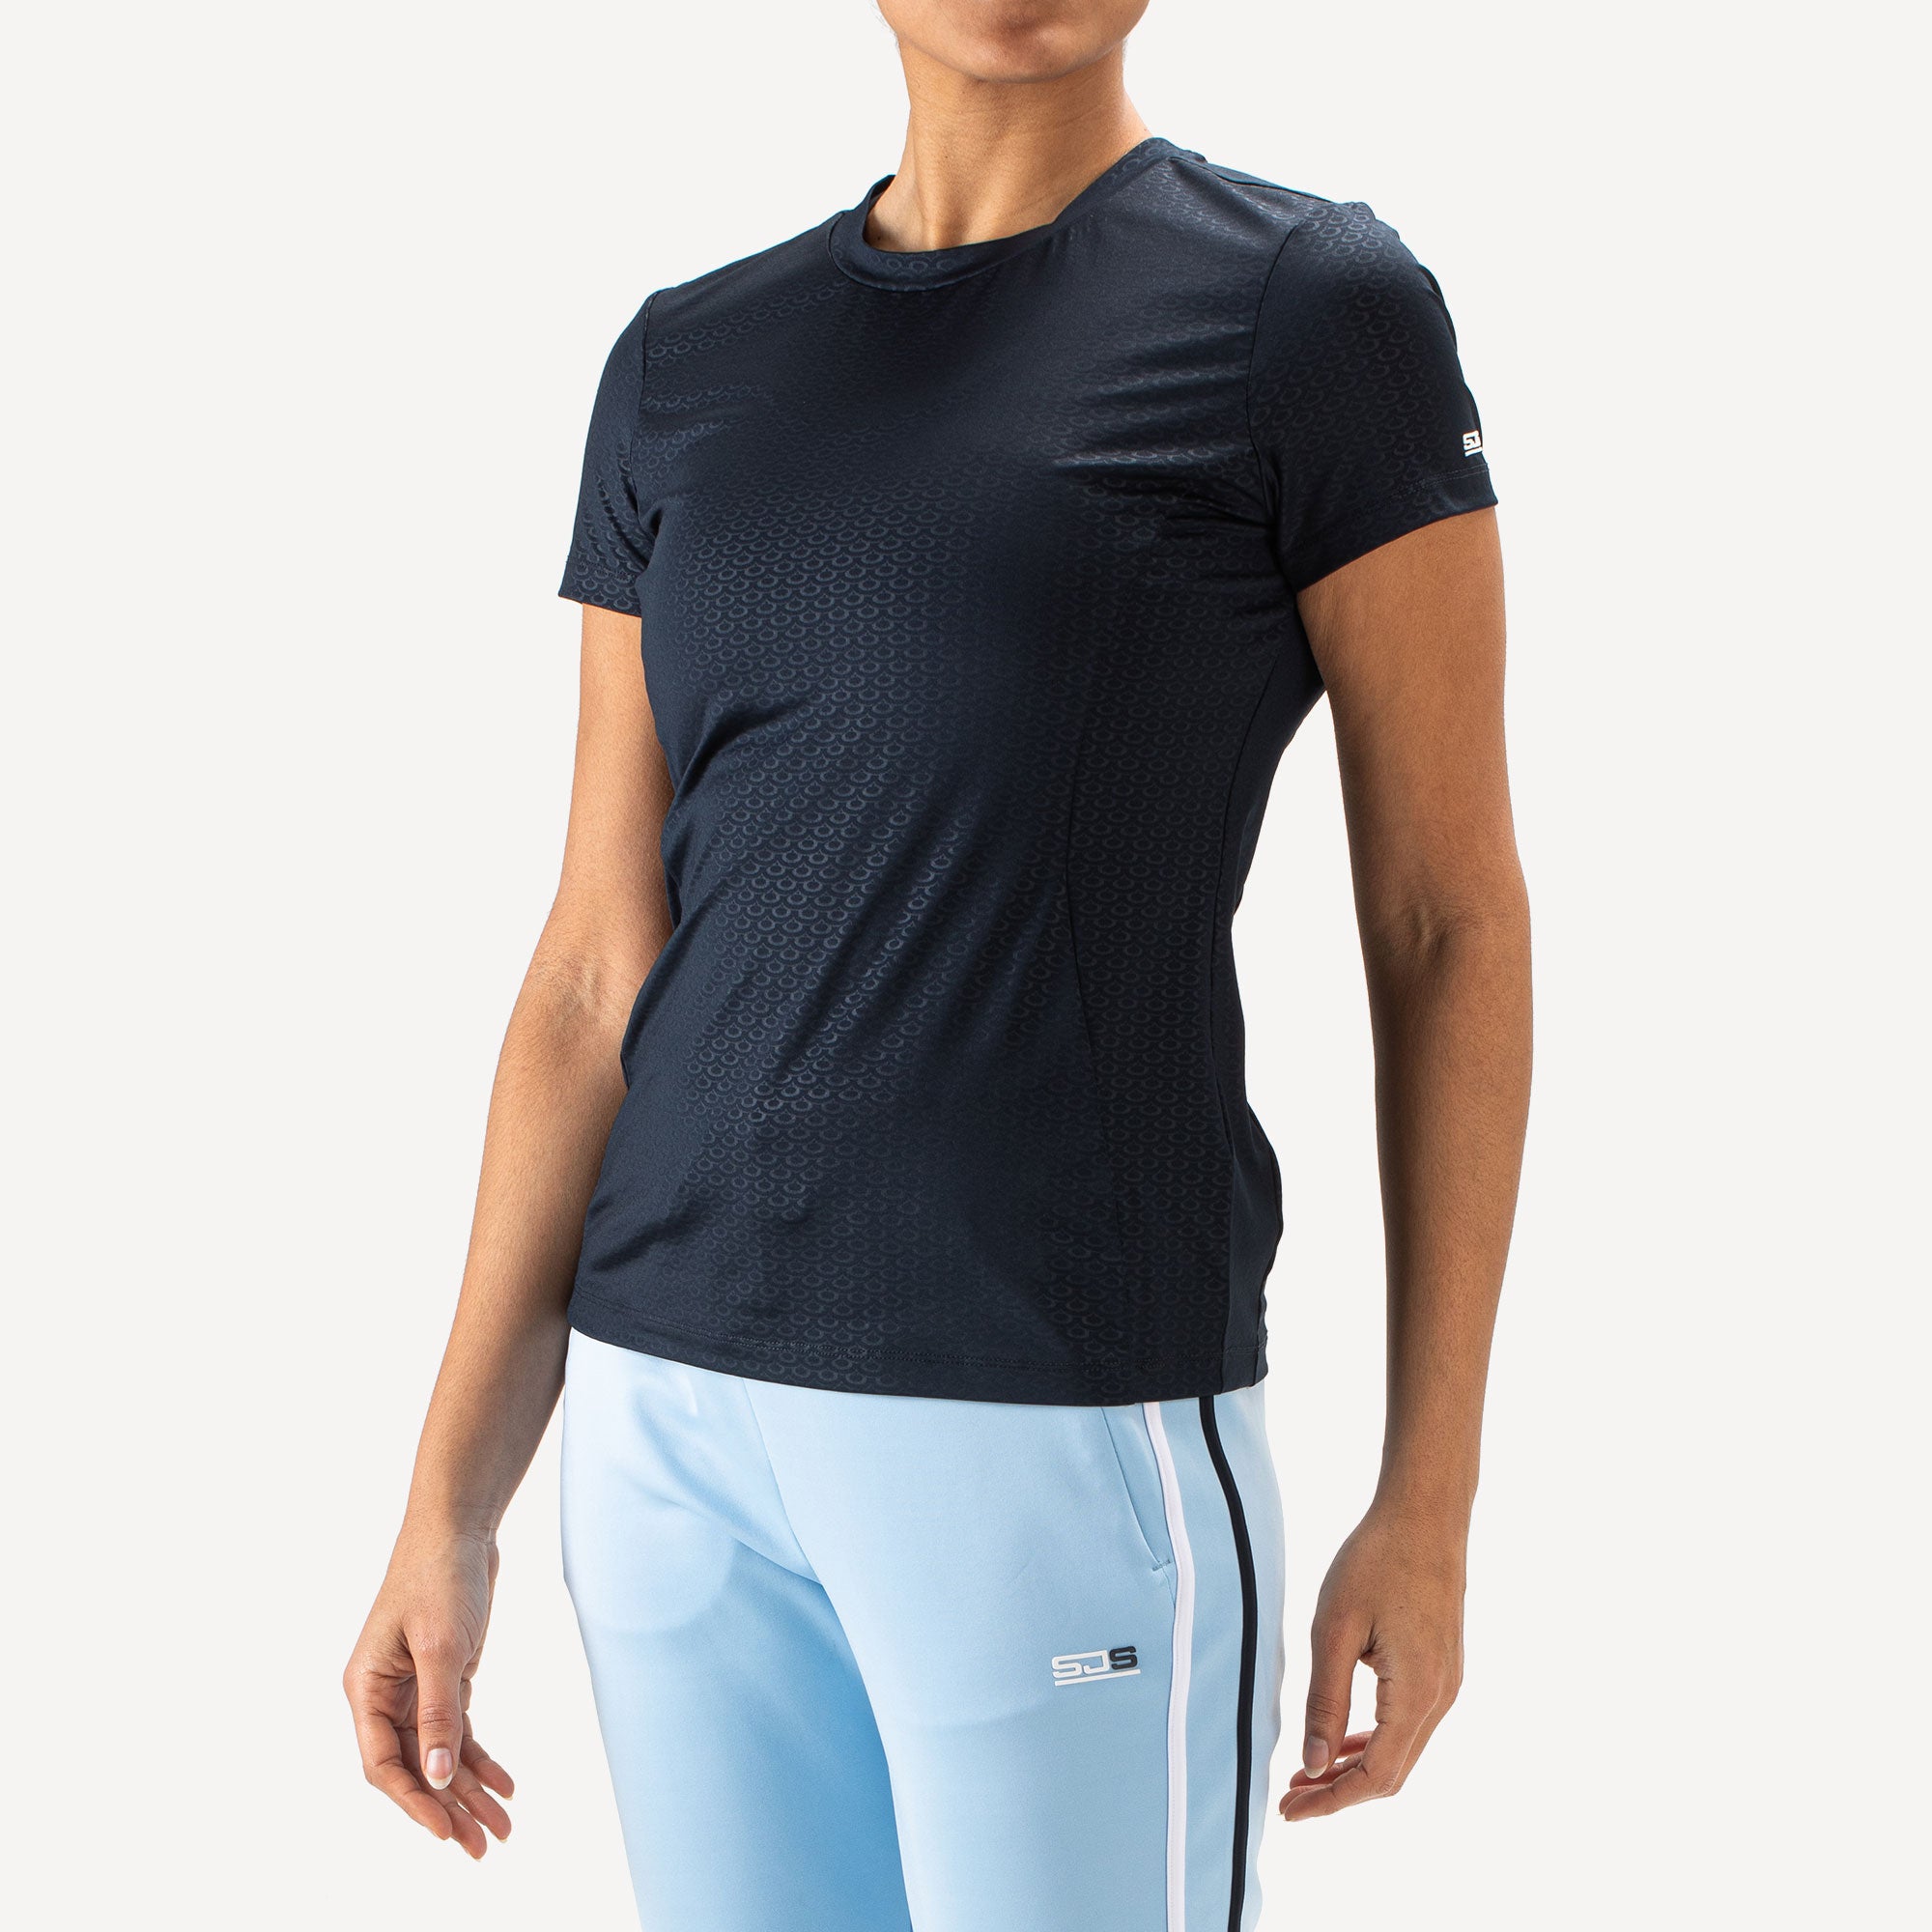 Sjeng Sports Isabeau Women's Tennis Shirt - Dark Blue (1)